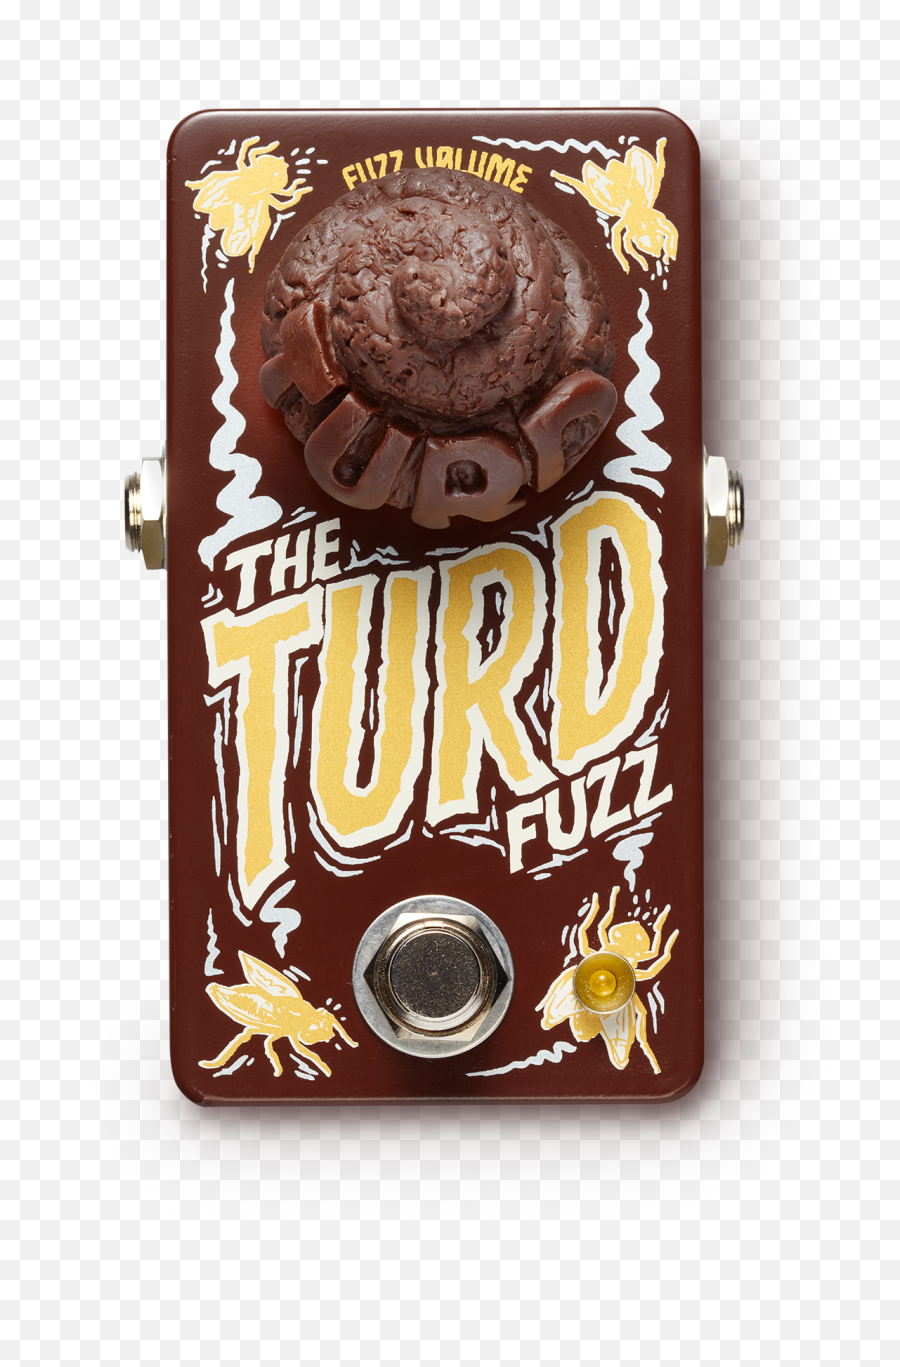 Mini Turd Fuzz - Fuzz Caca Png,Turd Png